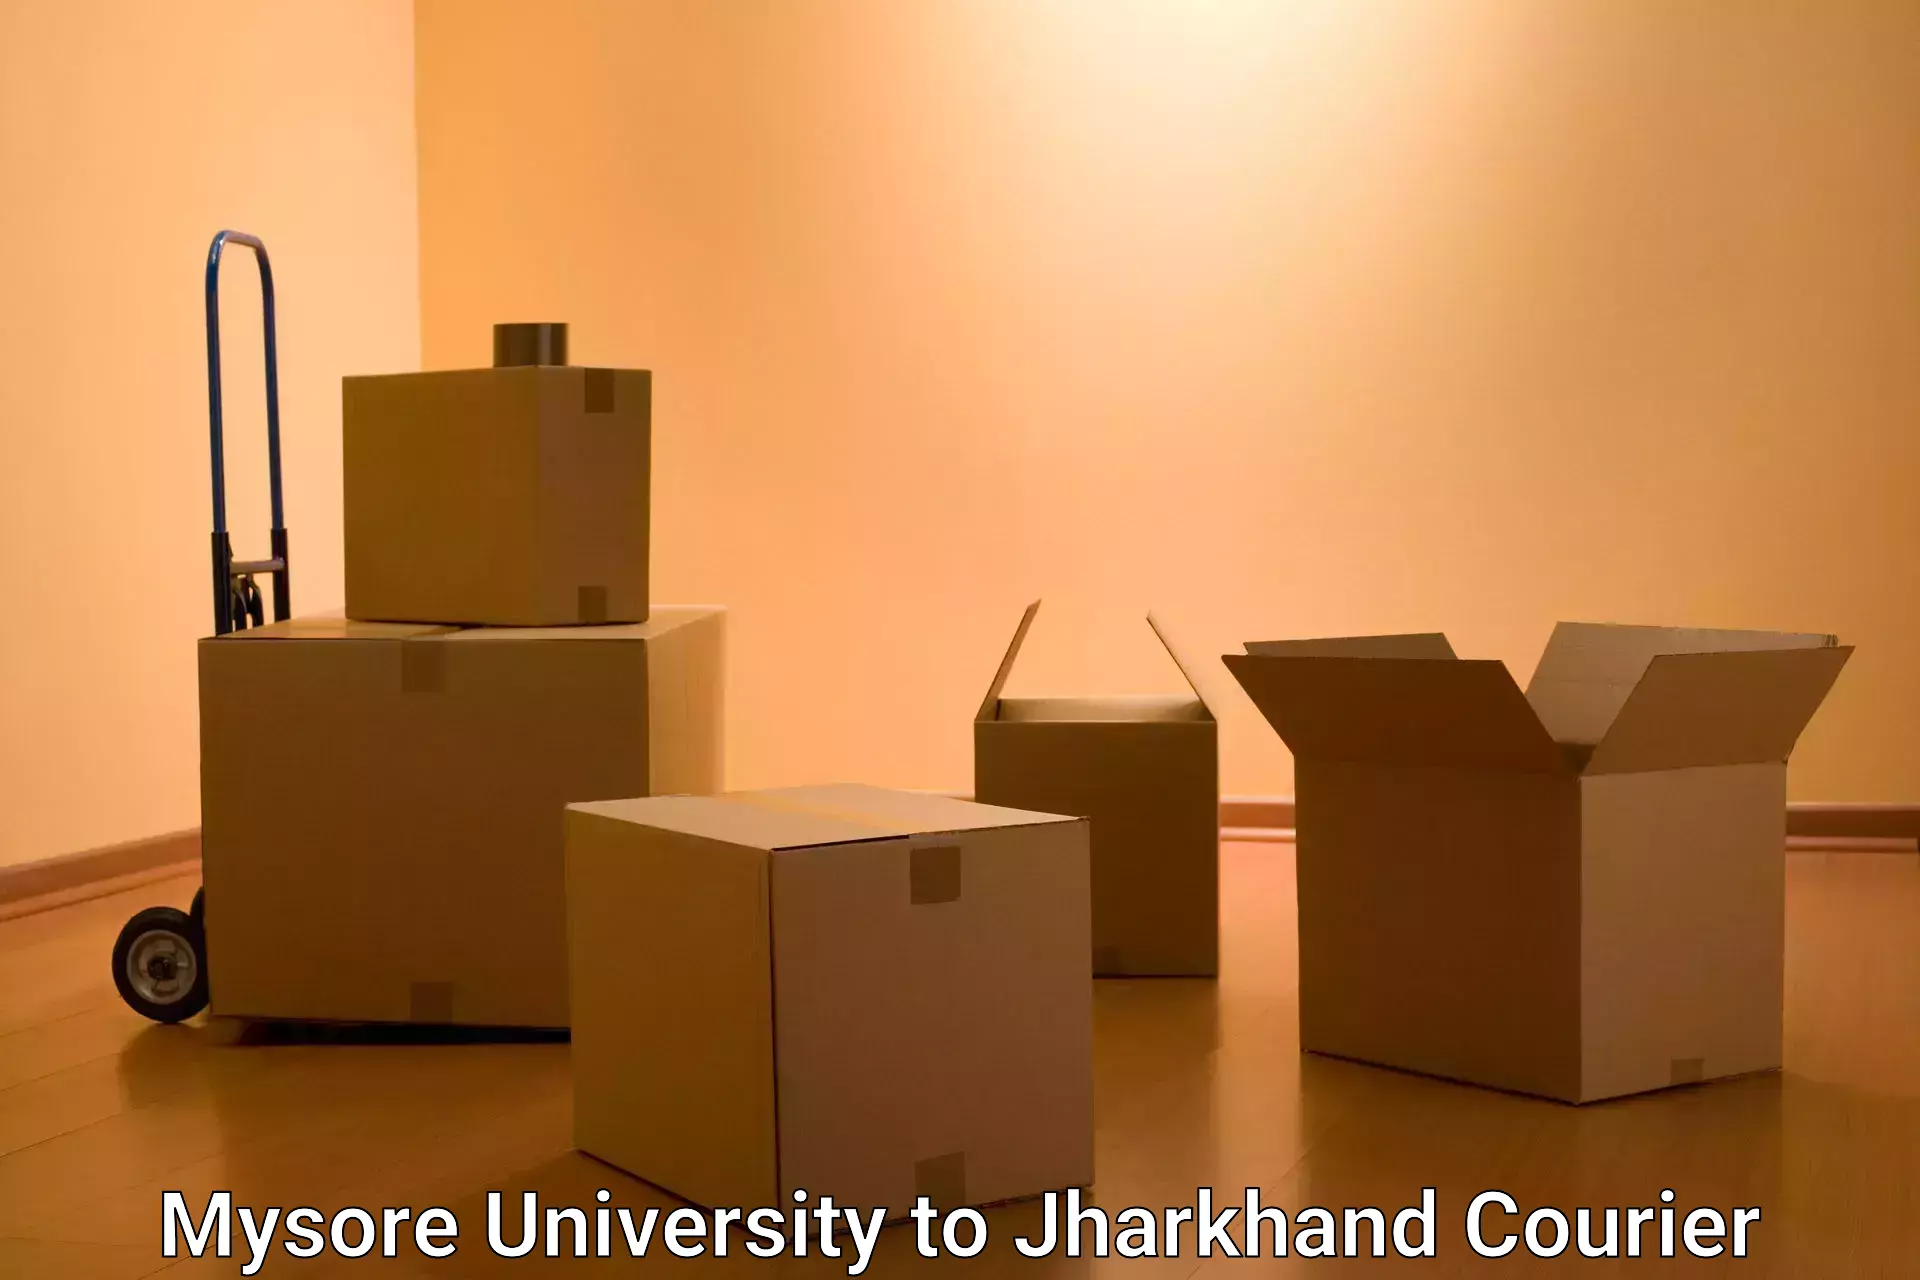 Efficient parcel service Mysore University to Daltonganj